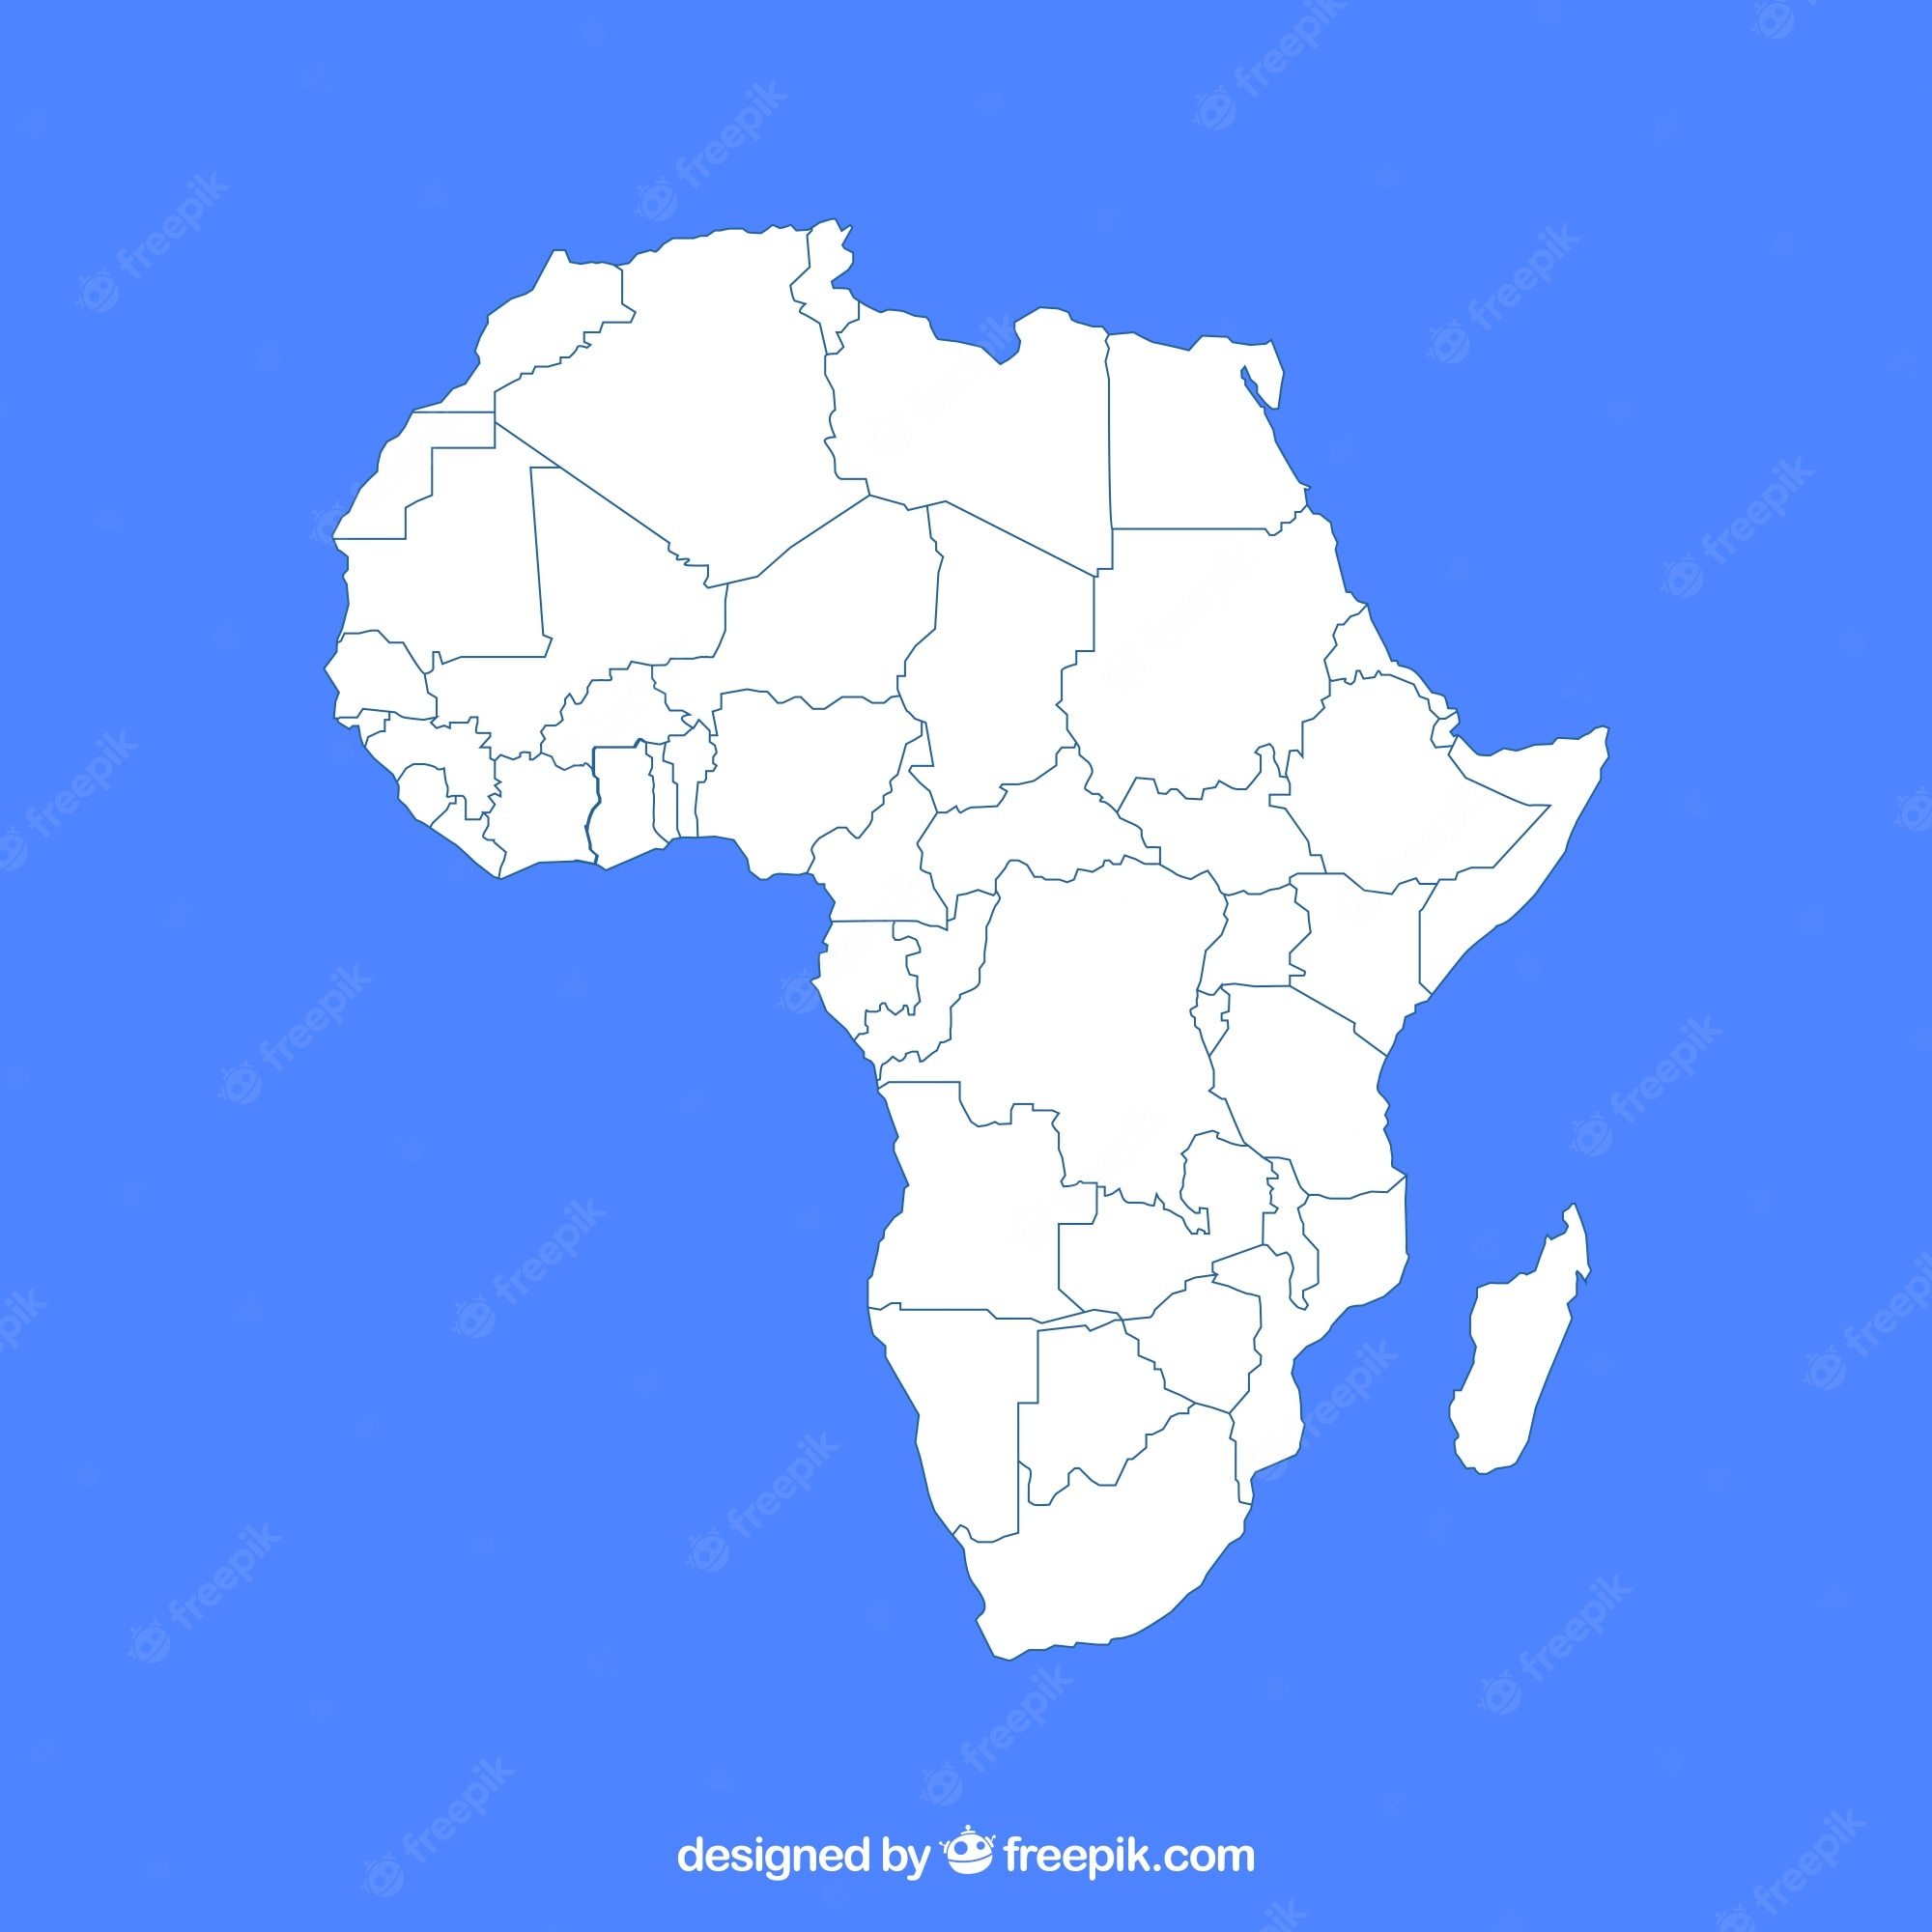 countries in africa - Class 9 - Quizizz